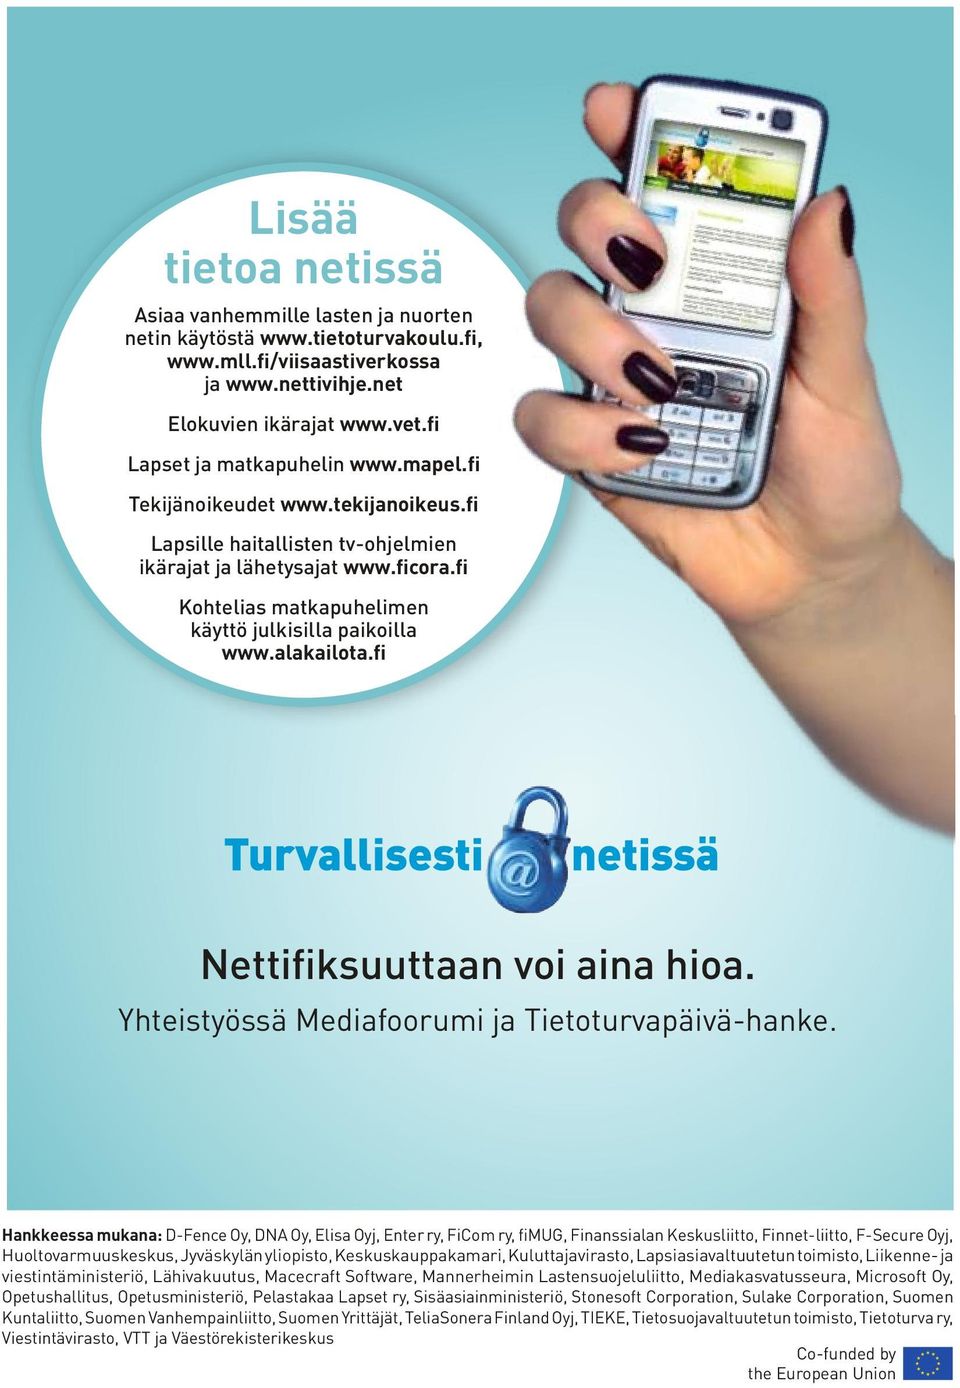 fi Kohtelias matkapuhelimen käyttö julkisilla paikoilla www.alakailota.fi Nettifiksuuttaan voi aina hioa. Yhteistyössä Mediafoorumi ja Tietoturvapäivä-hanke.